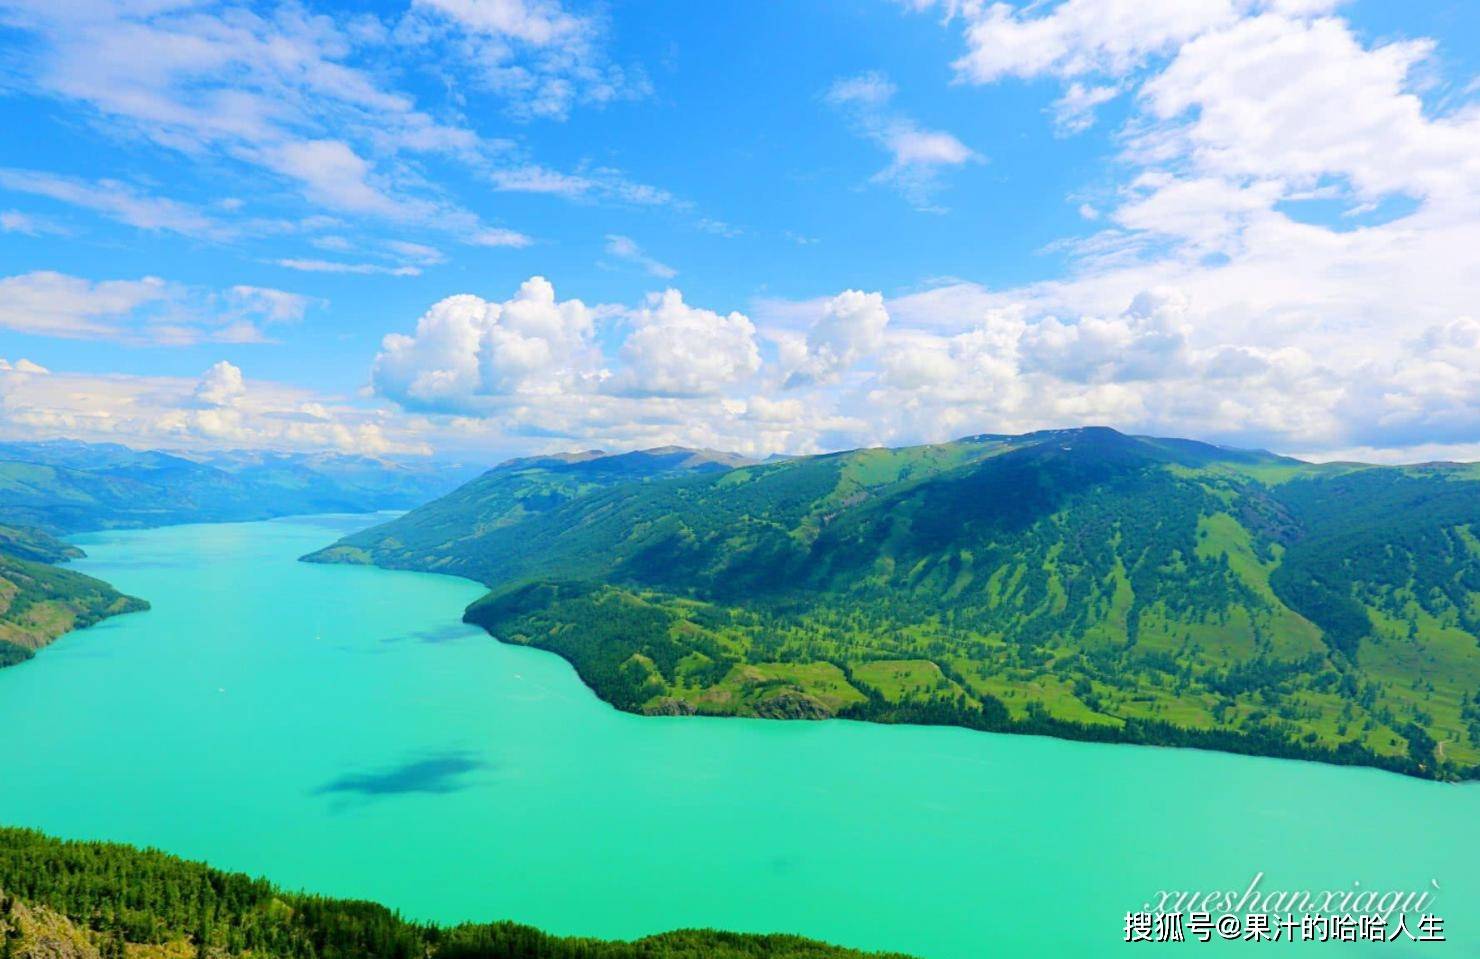 湖被称作中国最美的湖泊,在人们被它的景色吸引之前,神秘的水怪传说